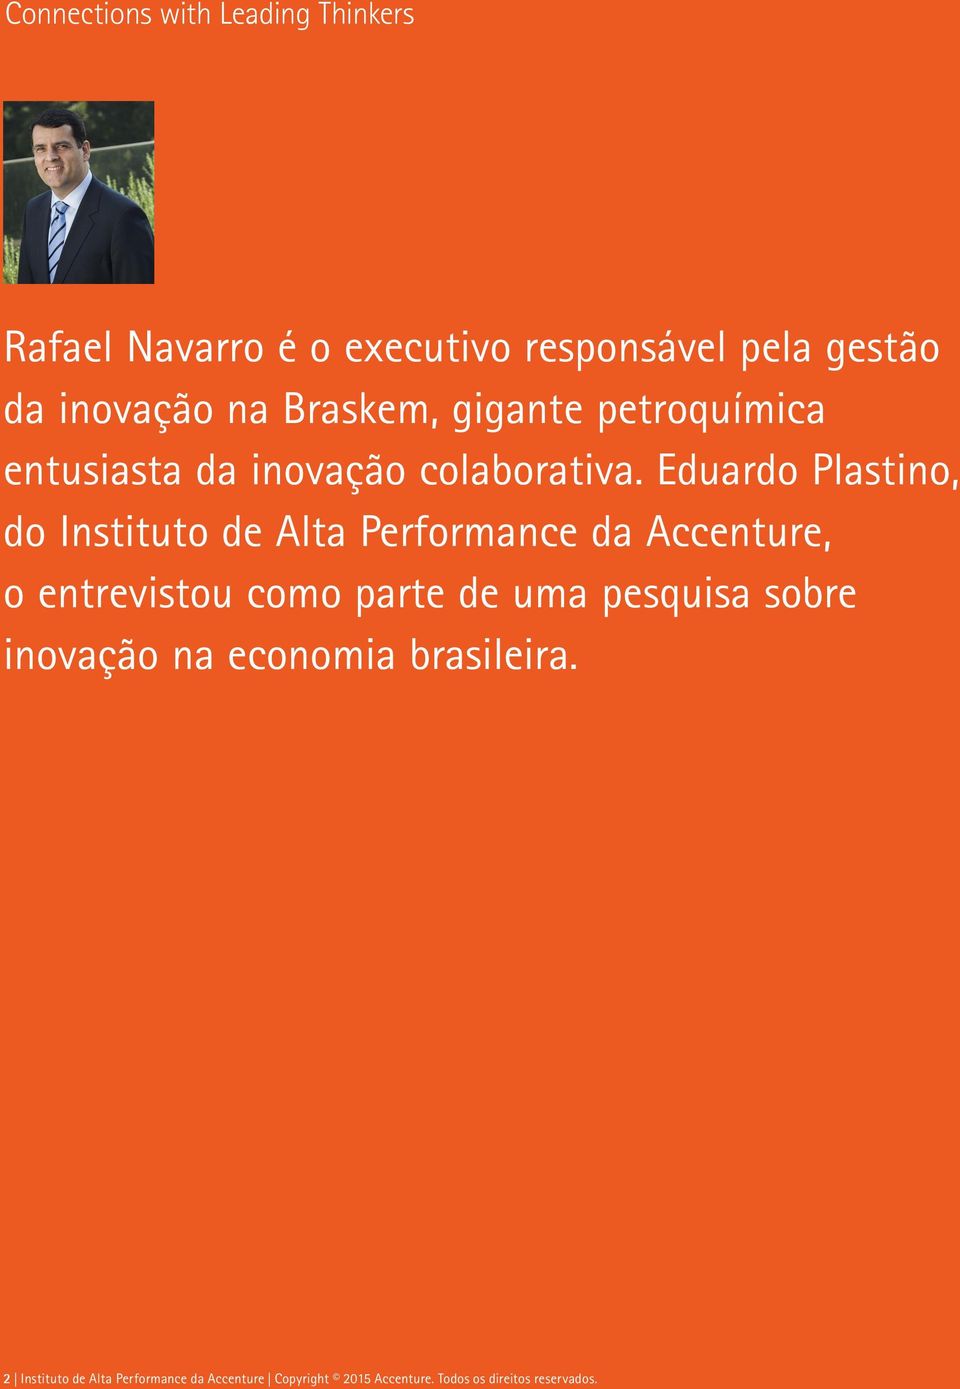 Eduardo Plastino, do Instituto de Alta Performance da Accenture, o entrevistou como parte de